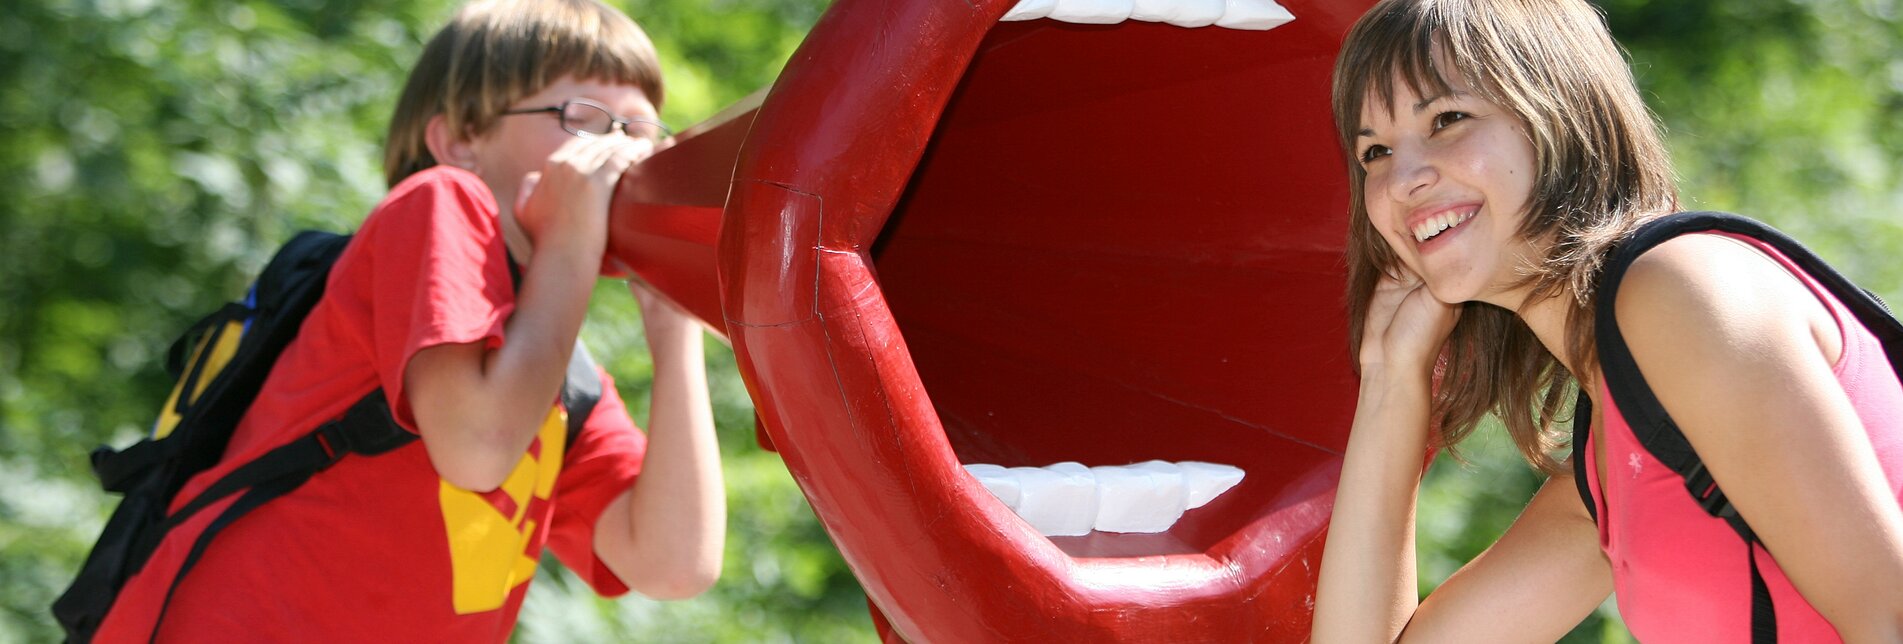 Eine Person lauschend vor einer großen Mund Skulptur | © Aldrian